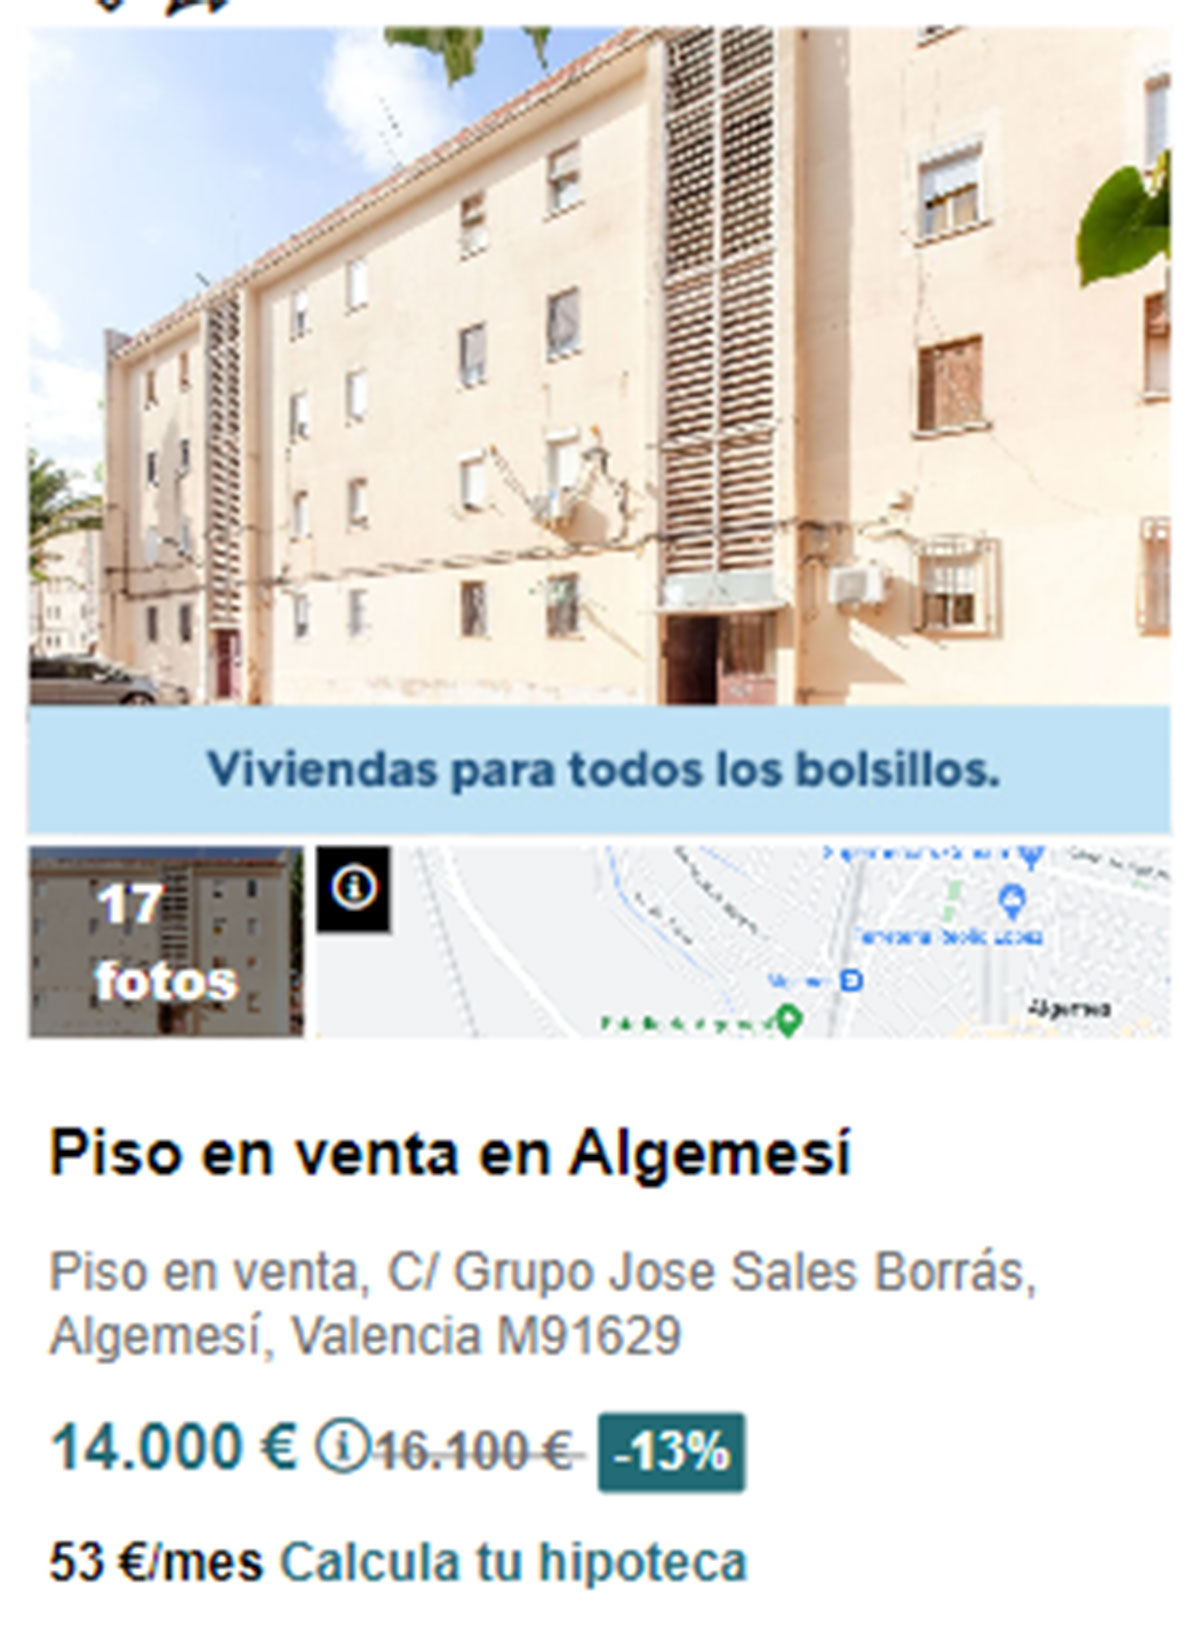 Piso en pueblos de Valencia por 14.000 euros